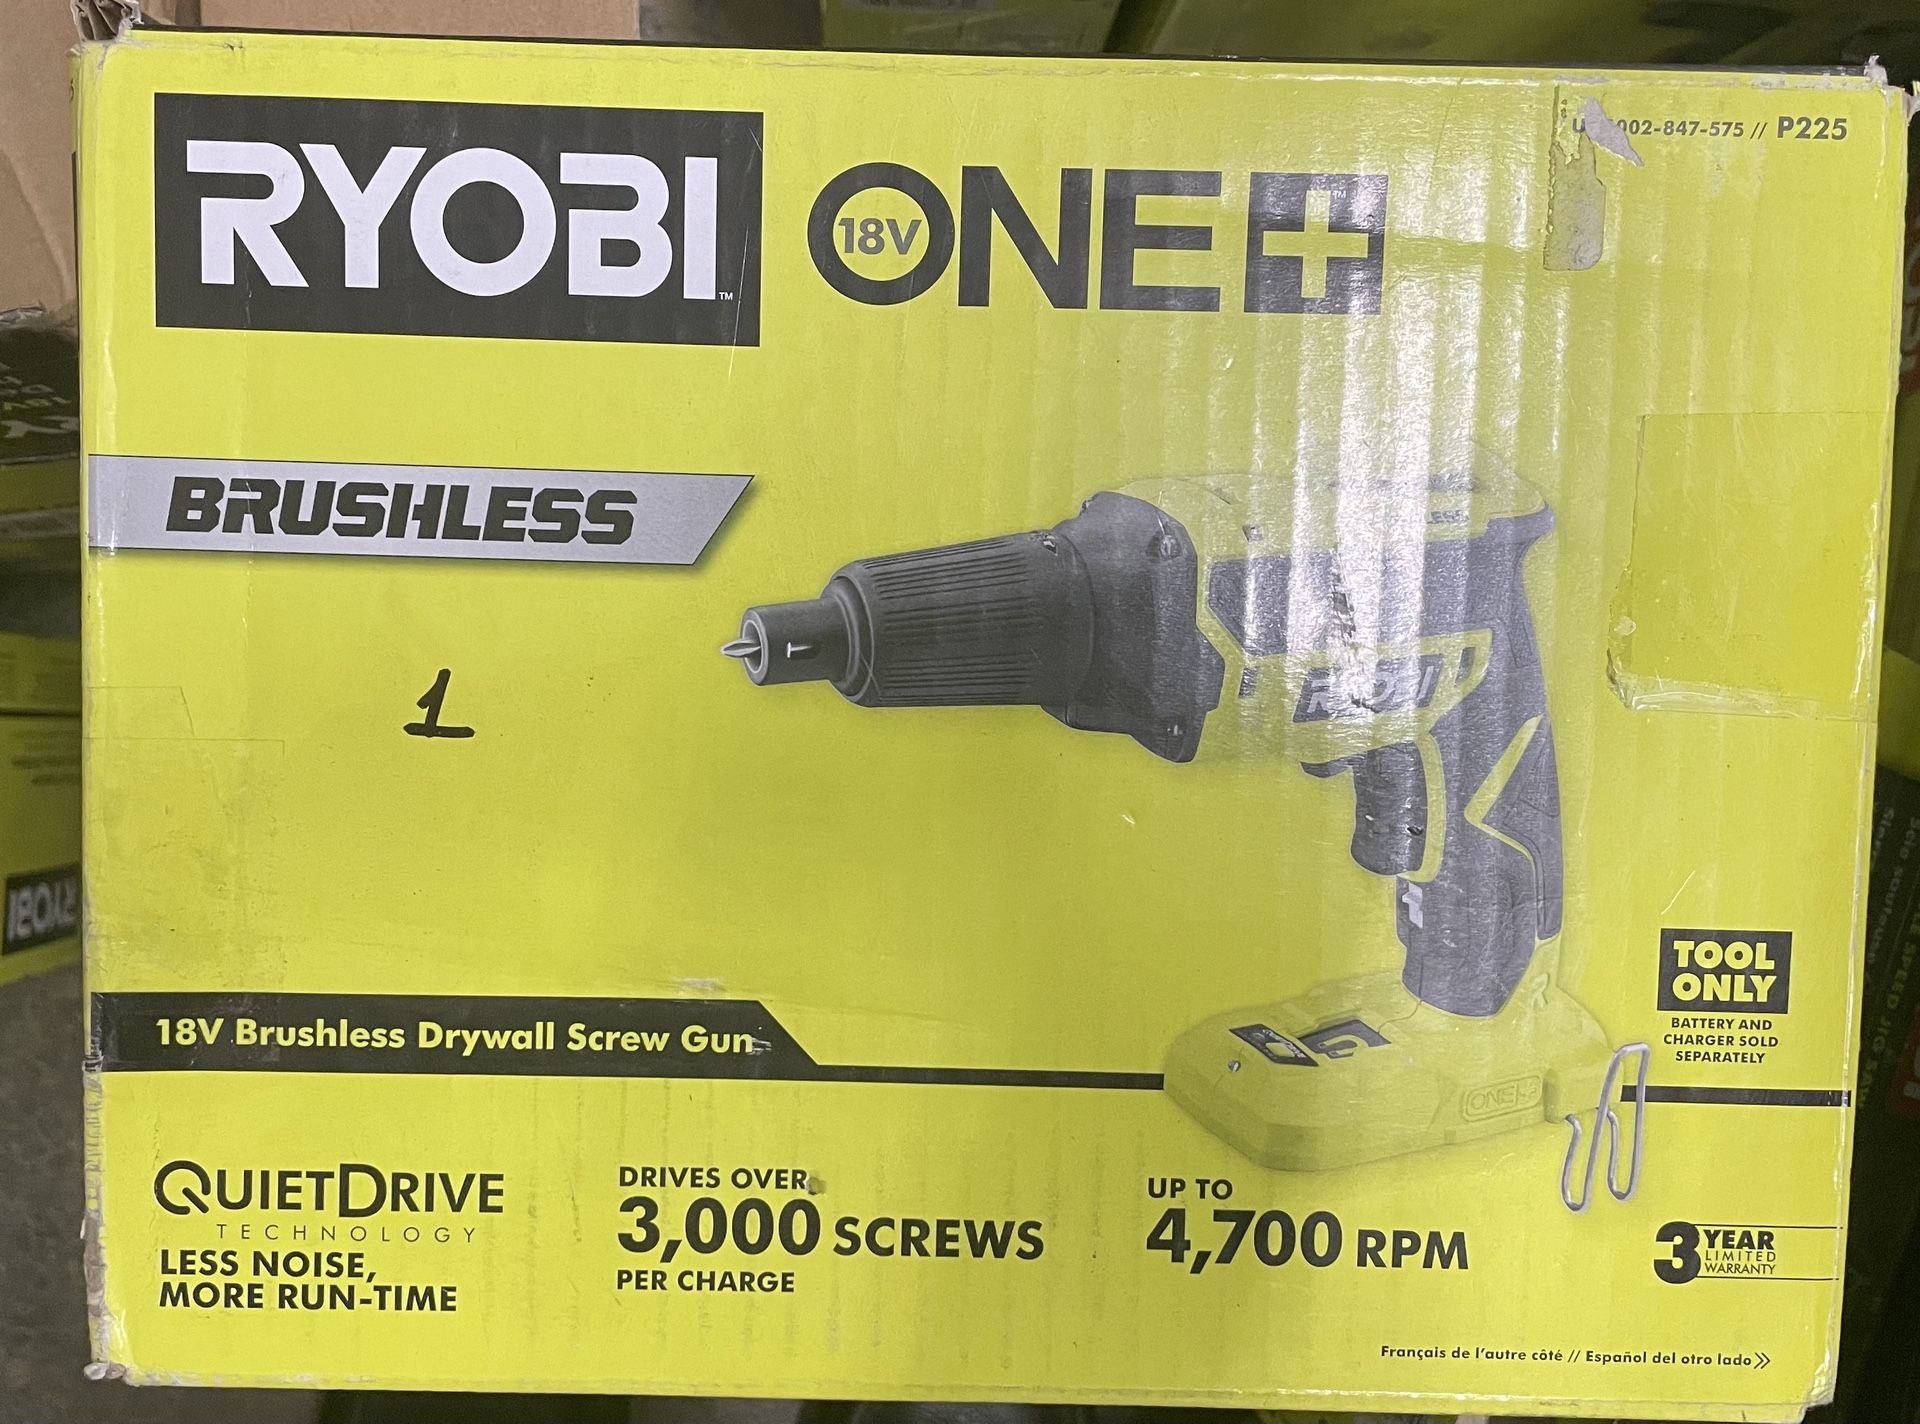 Ryobi one+ 18V Brushless Drywall Screw Gun(Tool Only)